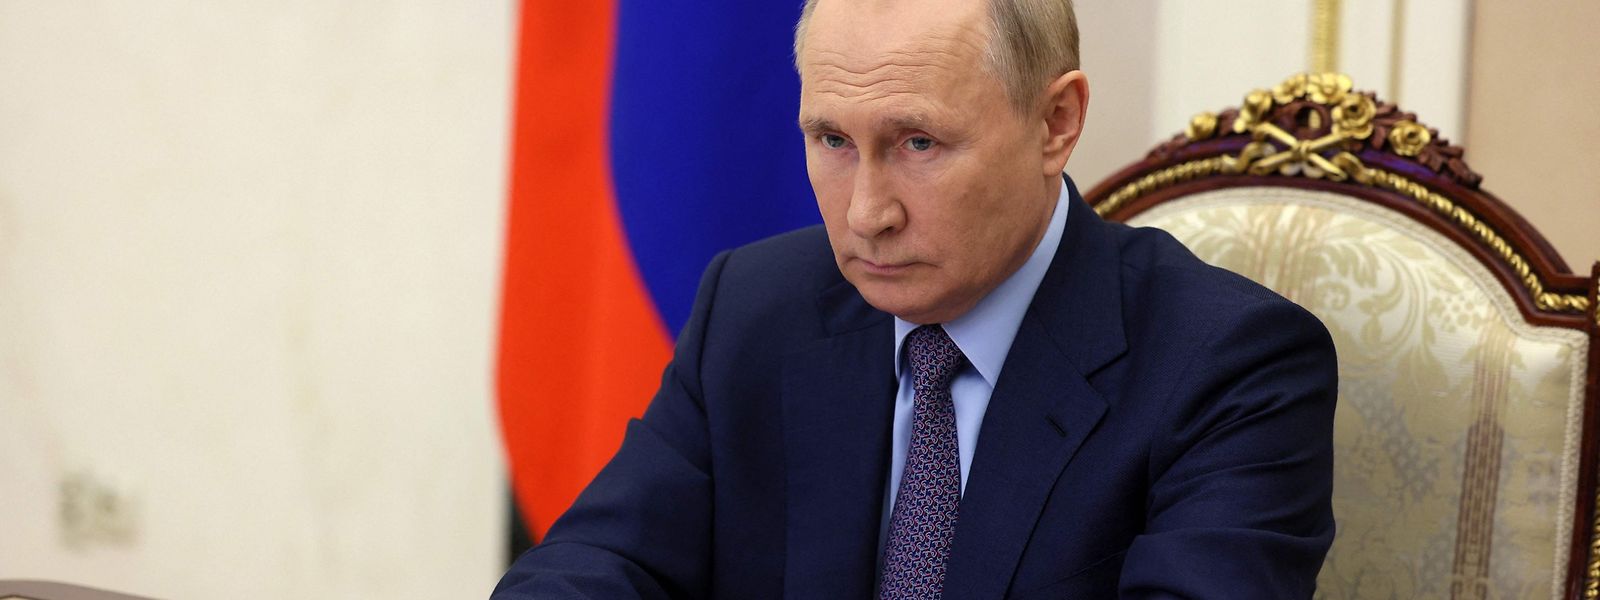 Der Führungsstil des Kreml-Chefs ist auch in Russland nicht unumstritten.